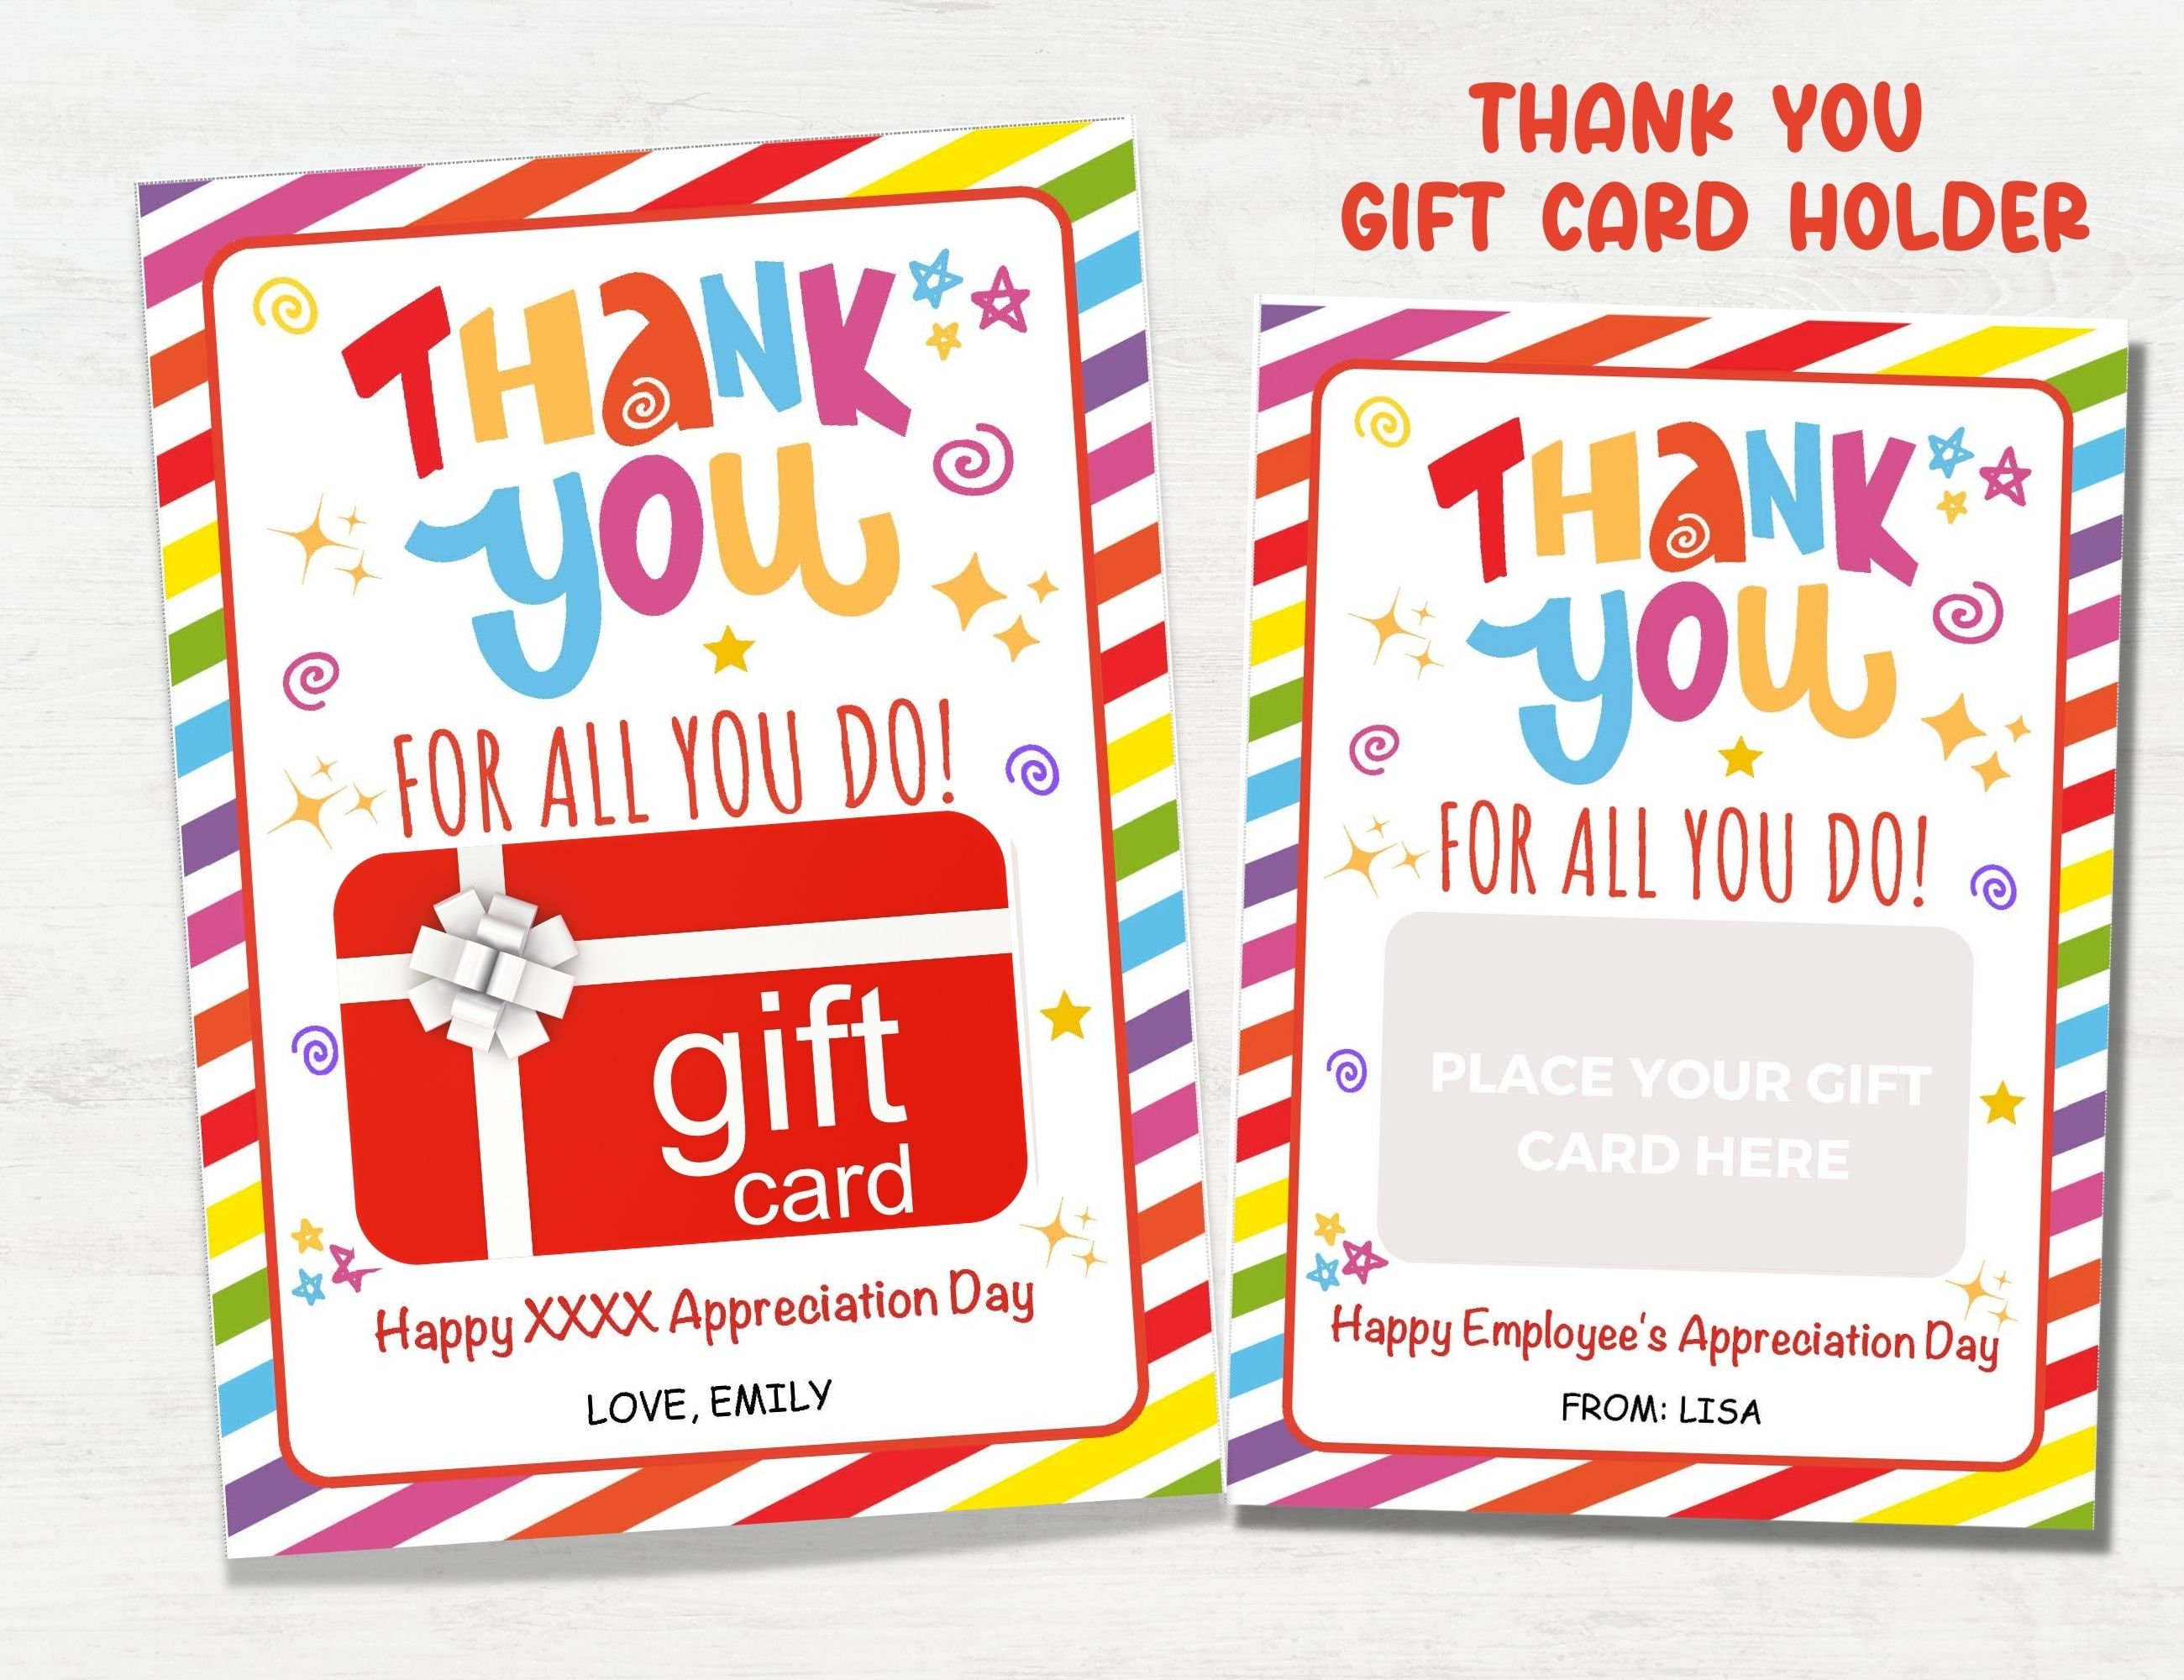  Carte cadeau  - Imprimer - Note de remerciement: Gift  Cards